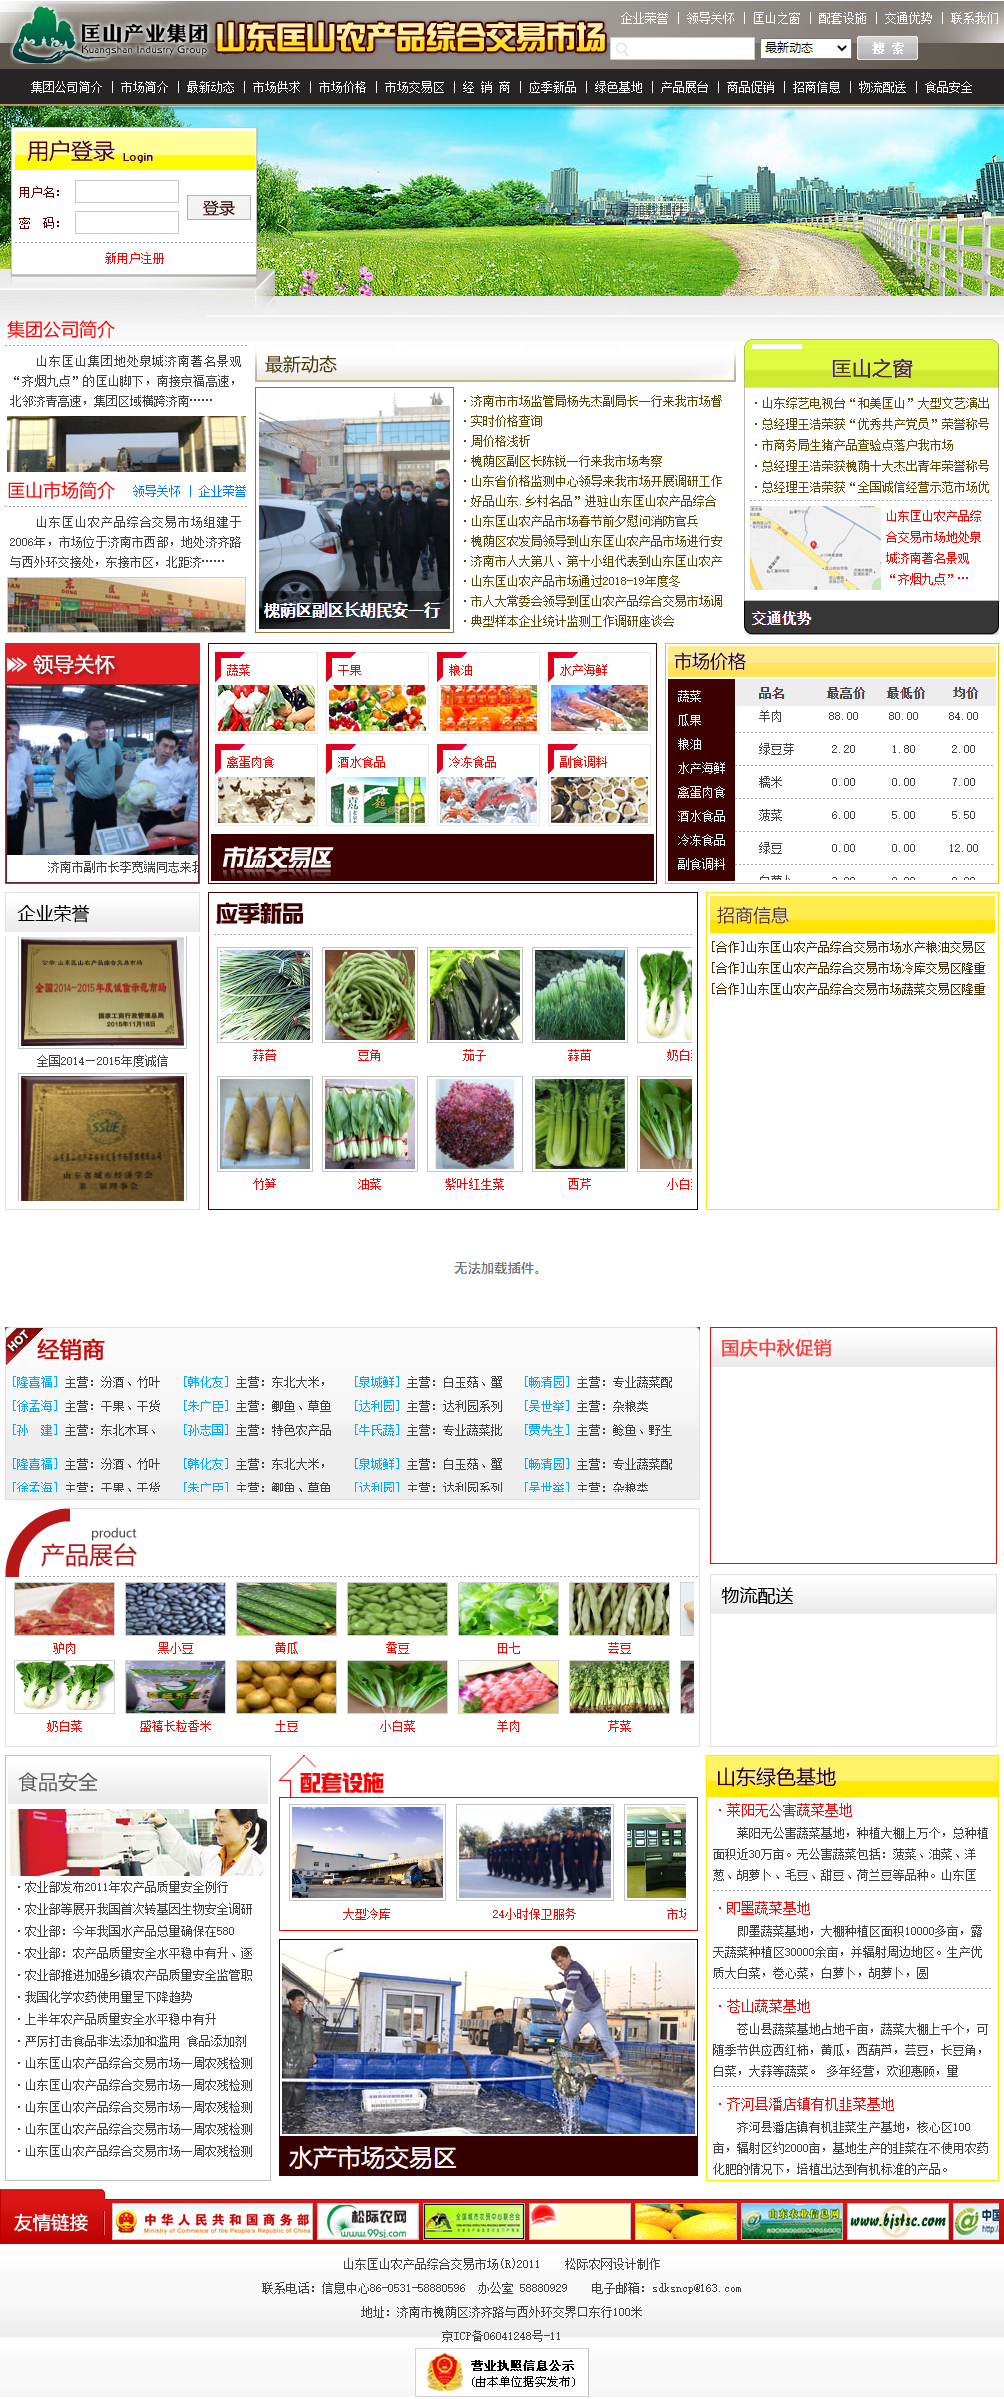 北京松际信息技术有限公司网站案例